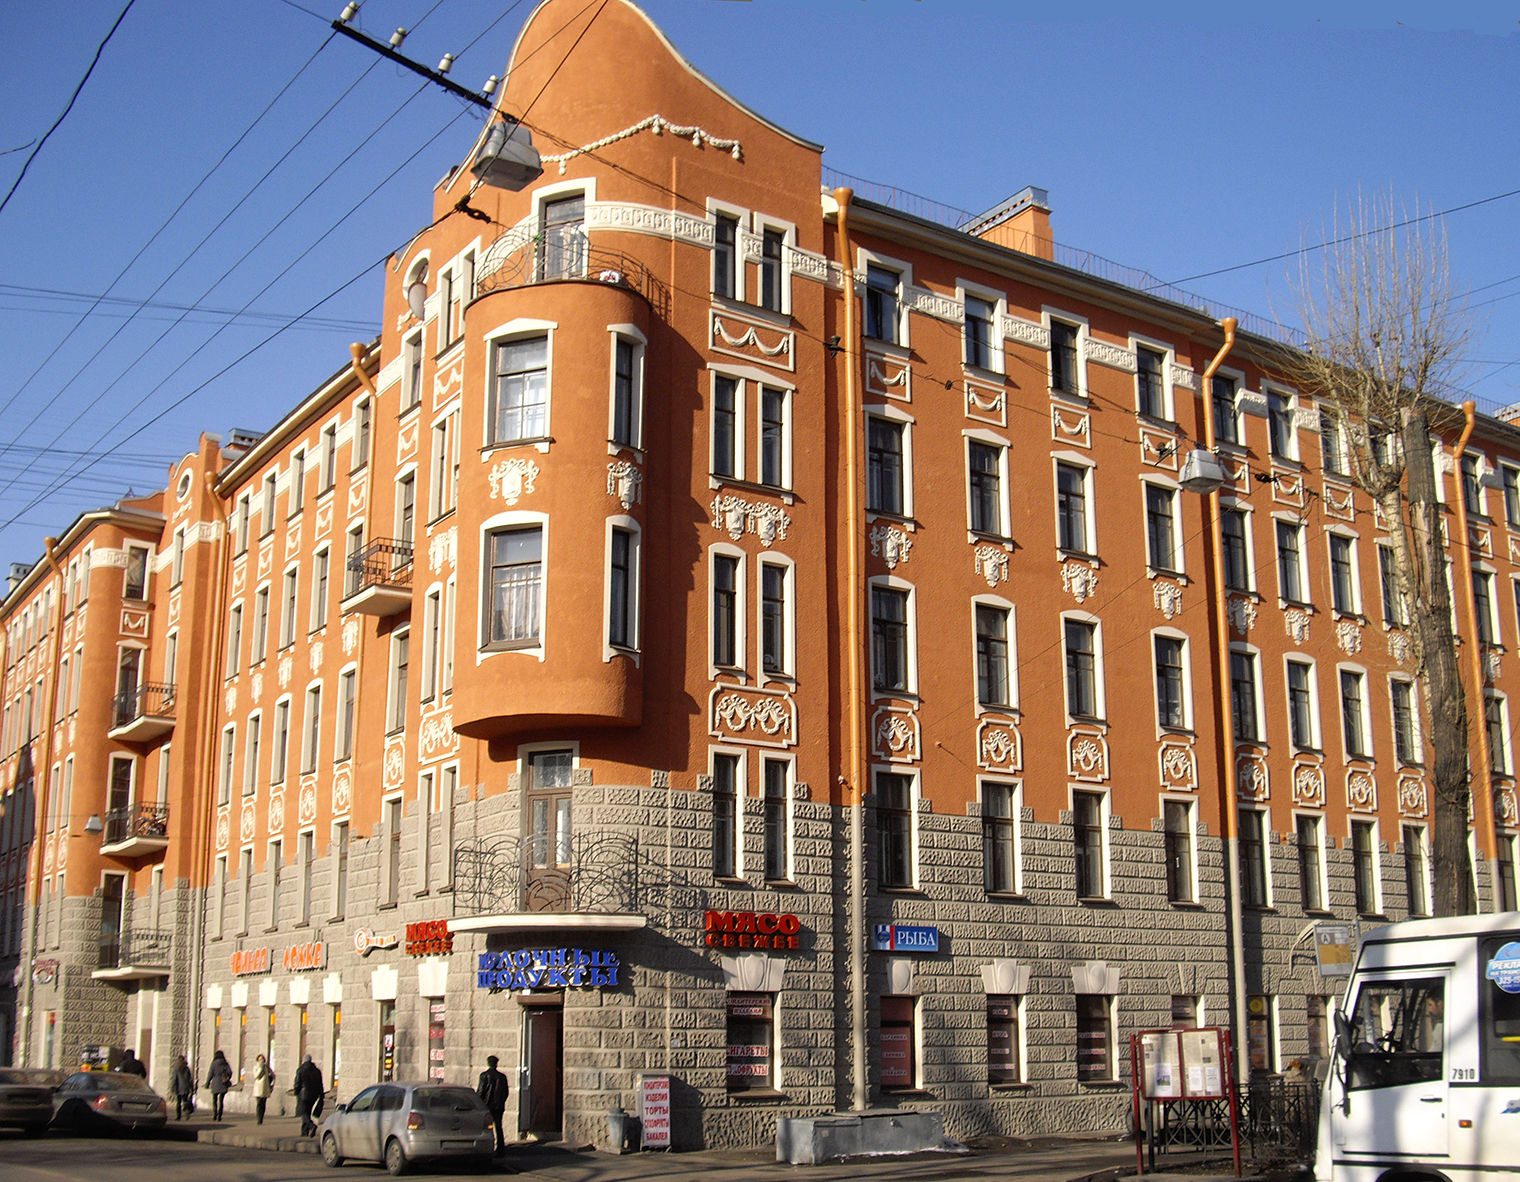 Вот так дом выглядит с улицы, парадная же находится справа. Фотография: Alexander Potekhin / Wikimedia Commons